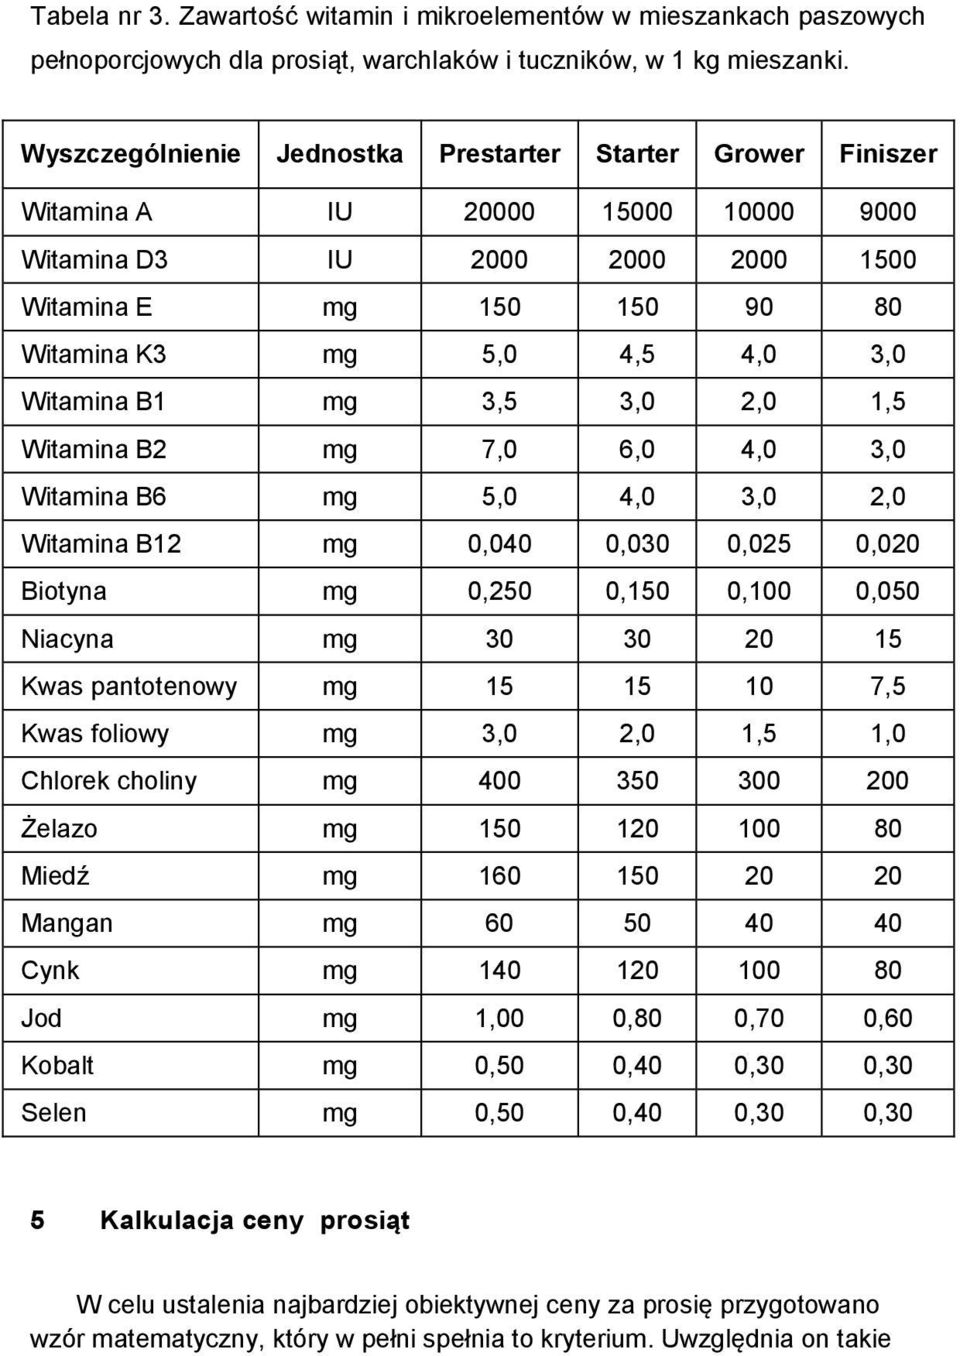 Witamina B1 mg 3,5 3,0 2,0 1,5 Witamina B2 mg 7,0 6,0 4,0 3,0 Witamina B6 mg 5,0 4,0 3,0 2,0 Witamina B12 mg 0,040 0,030 0,025 0,020 Biotyna mg 0,250 0,150 0,100 0,050 Niacyna mg 30 30 20 15 Kwas